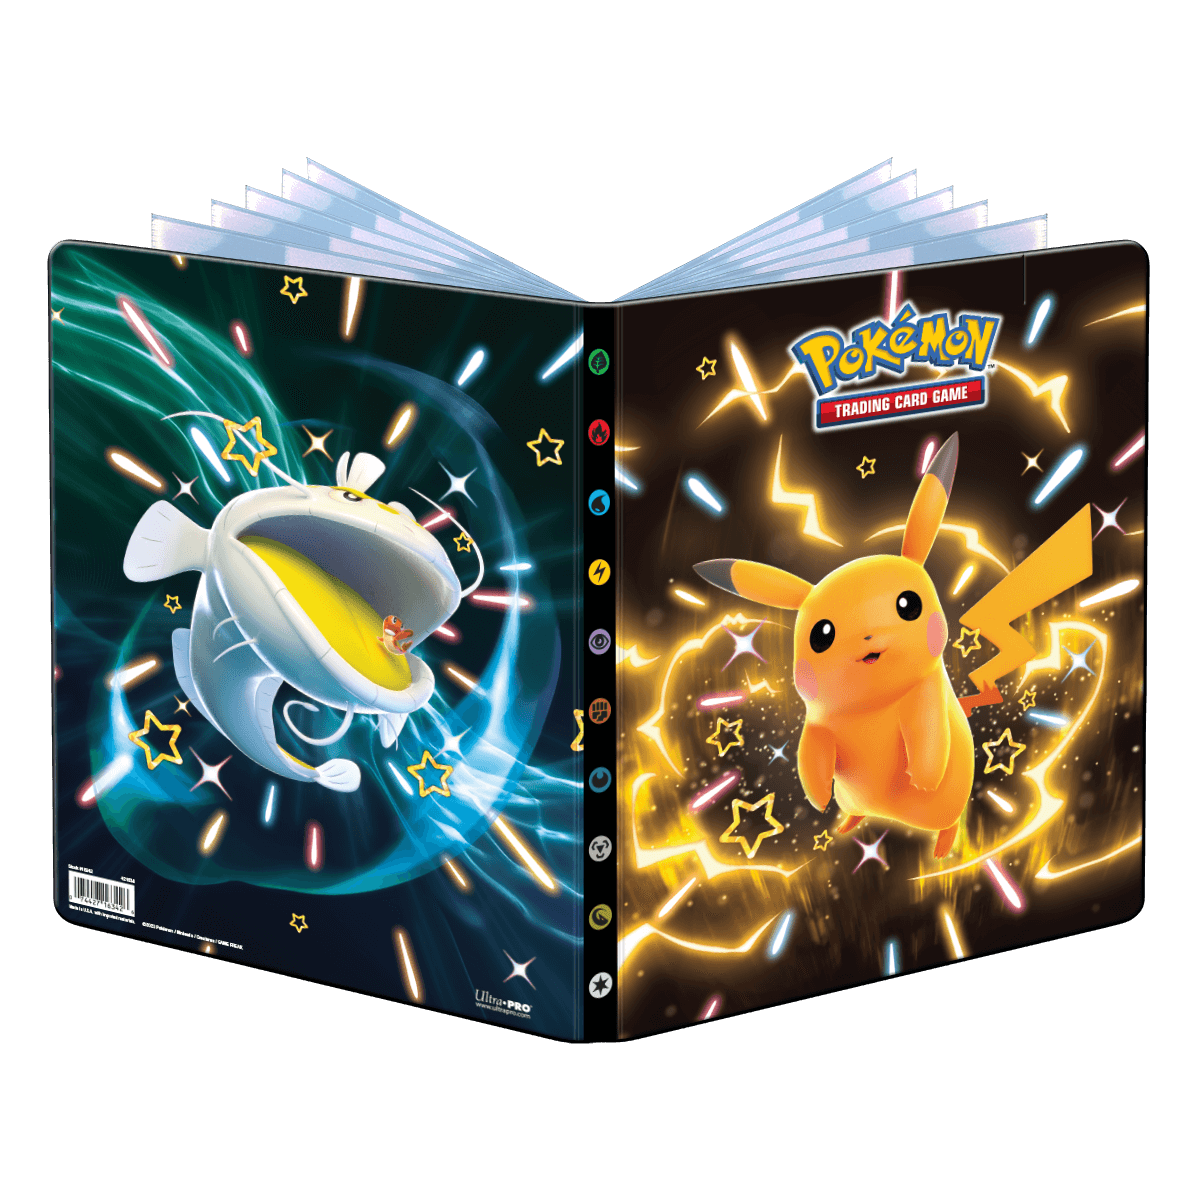 Portefeuille 9 poches pour Pokémon - Pikachu, Dondozo et Tatsugiri brillants, écarlates et violets